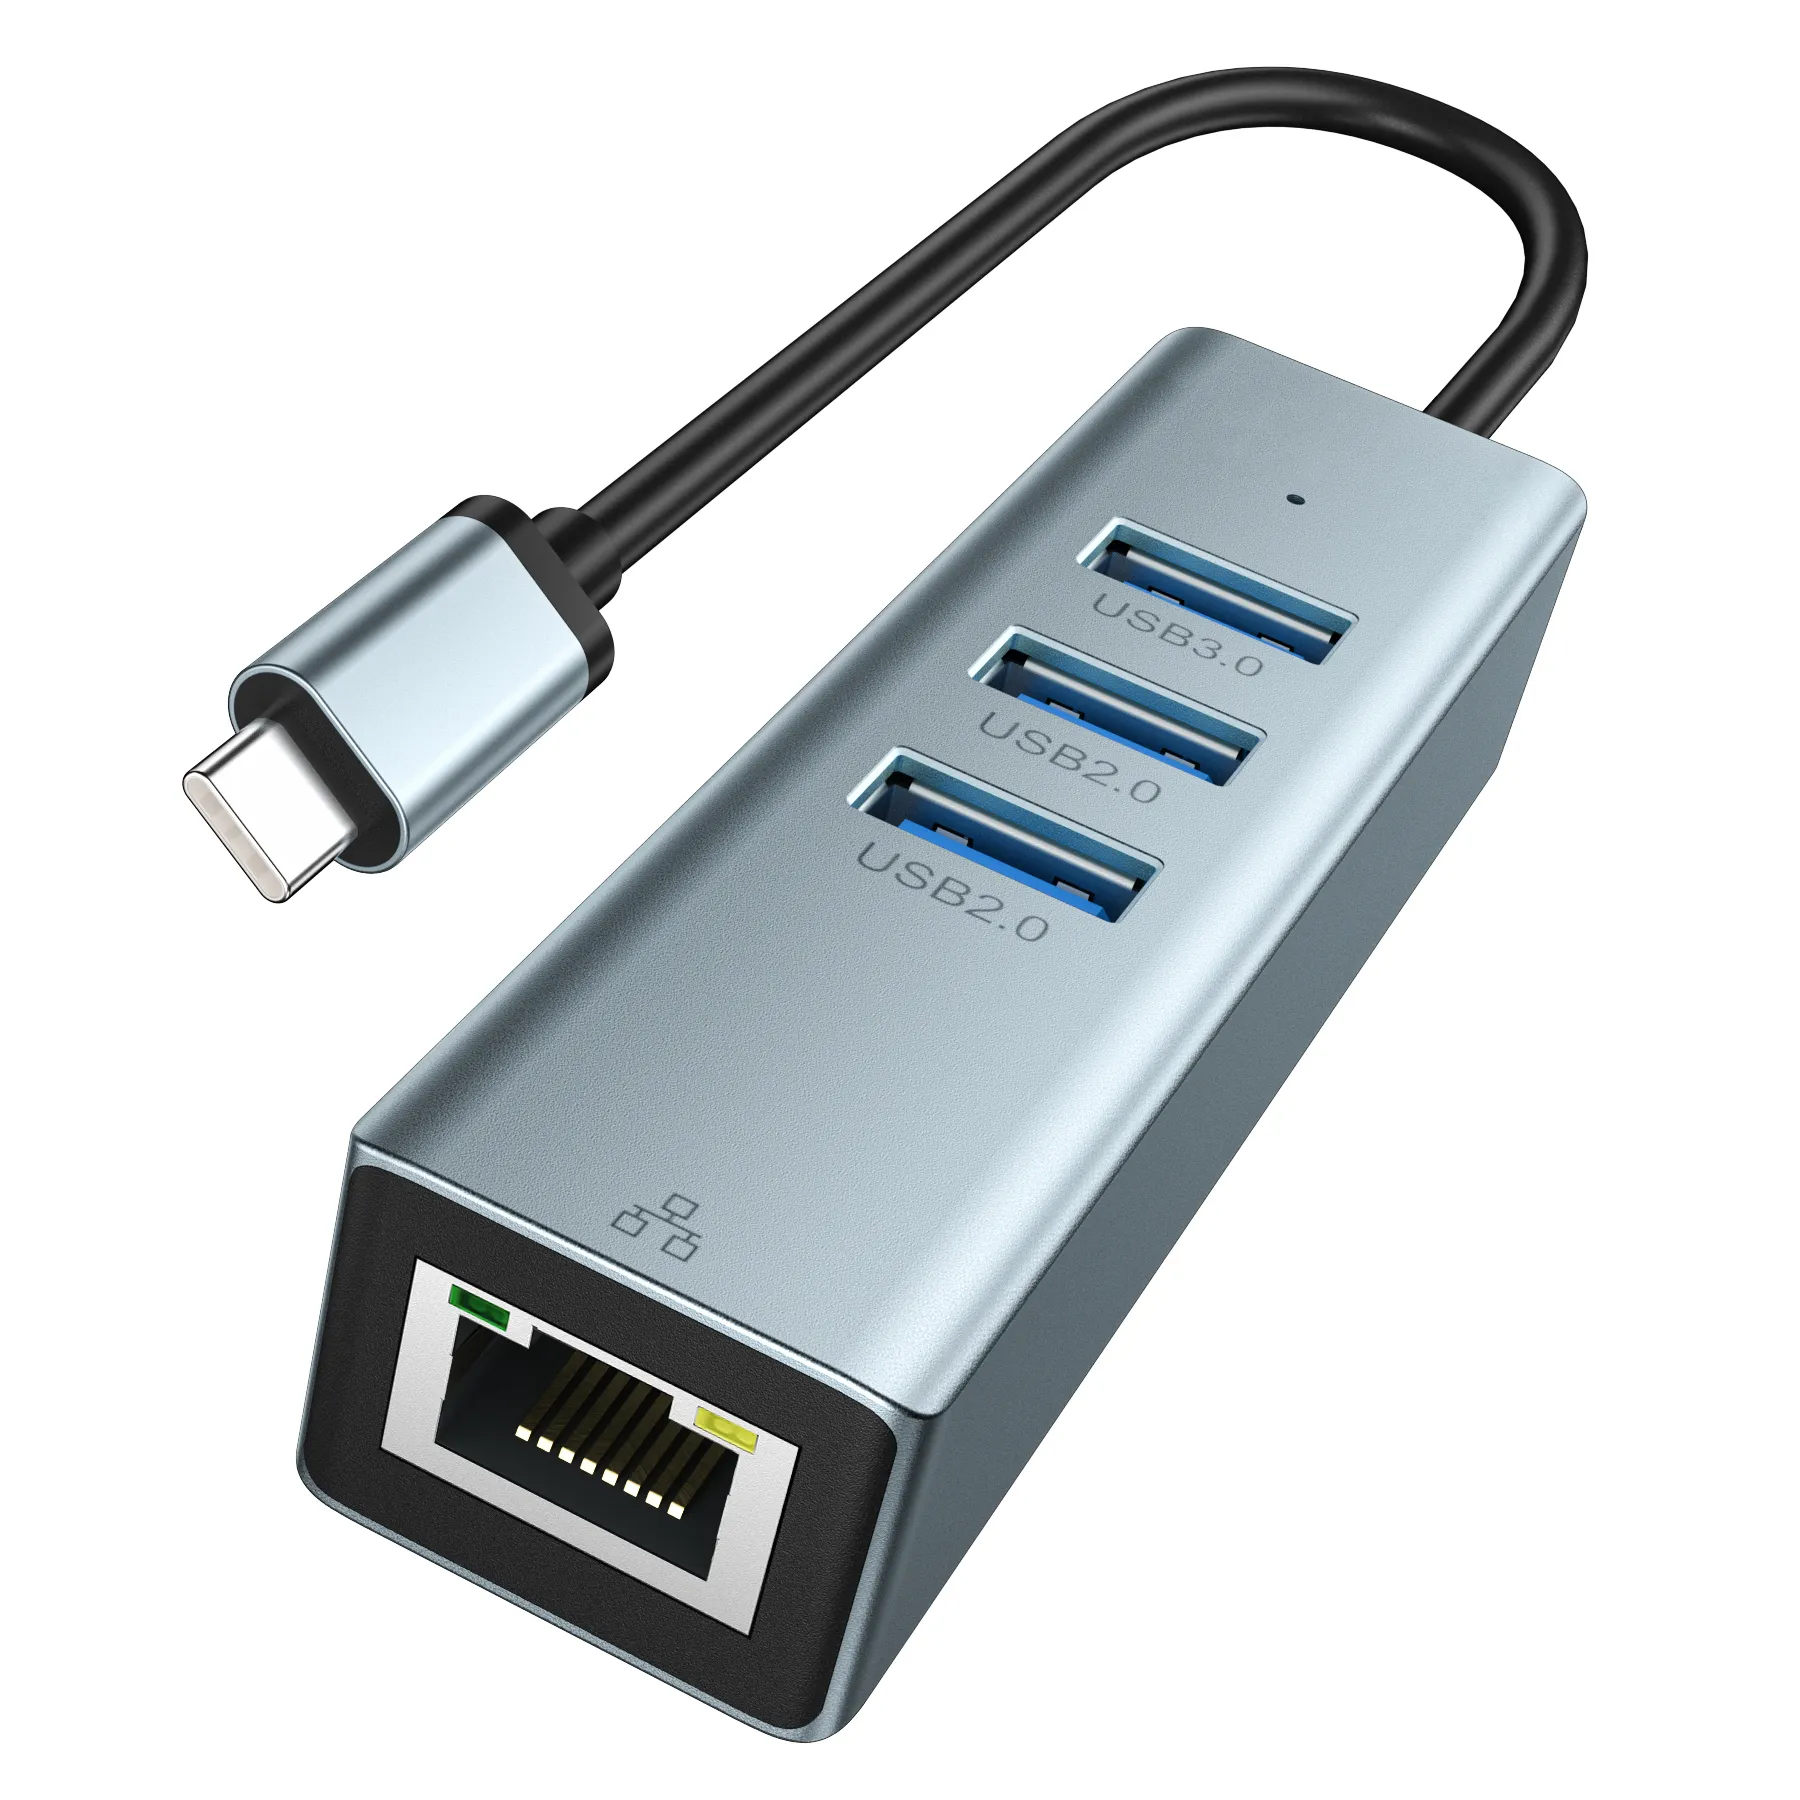 Lemorele USB C Hub Ethernet Adapter 3 USB Ports RJ45 Network Connector for MacBook Pro Chromebook More